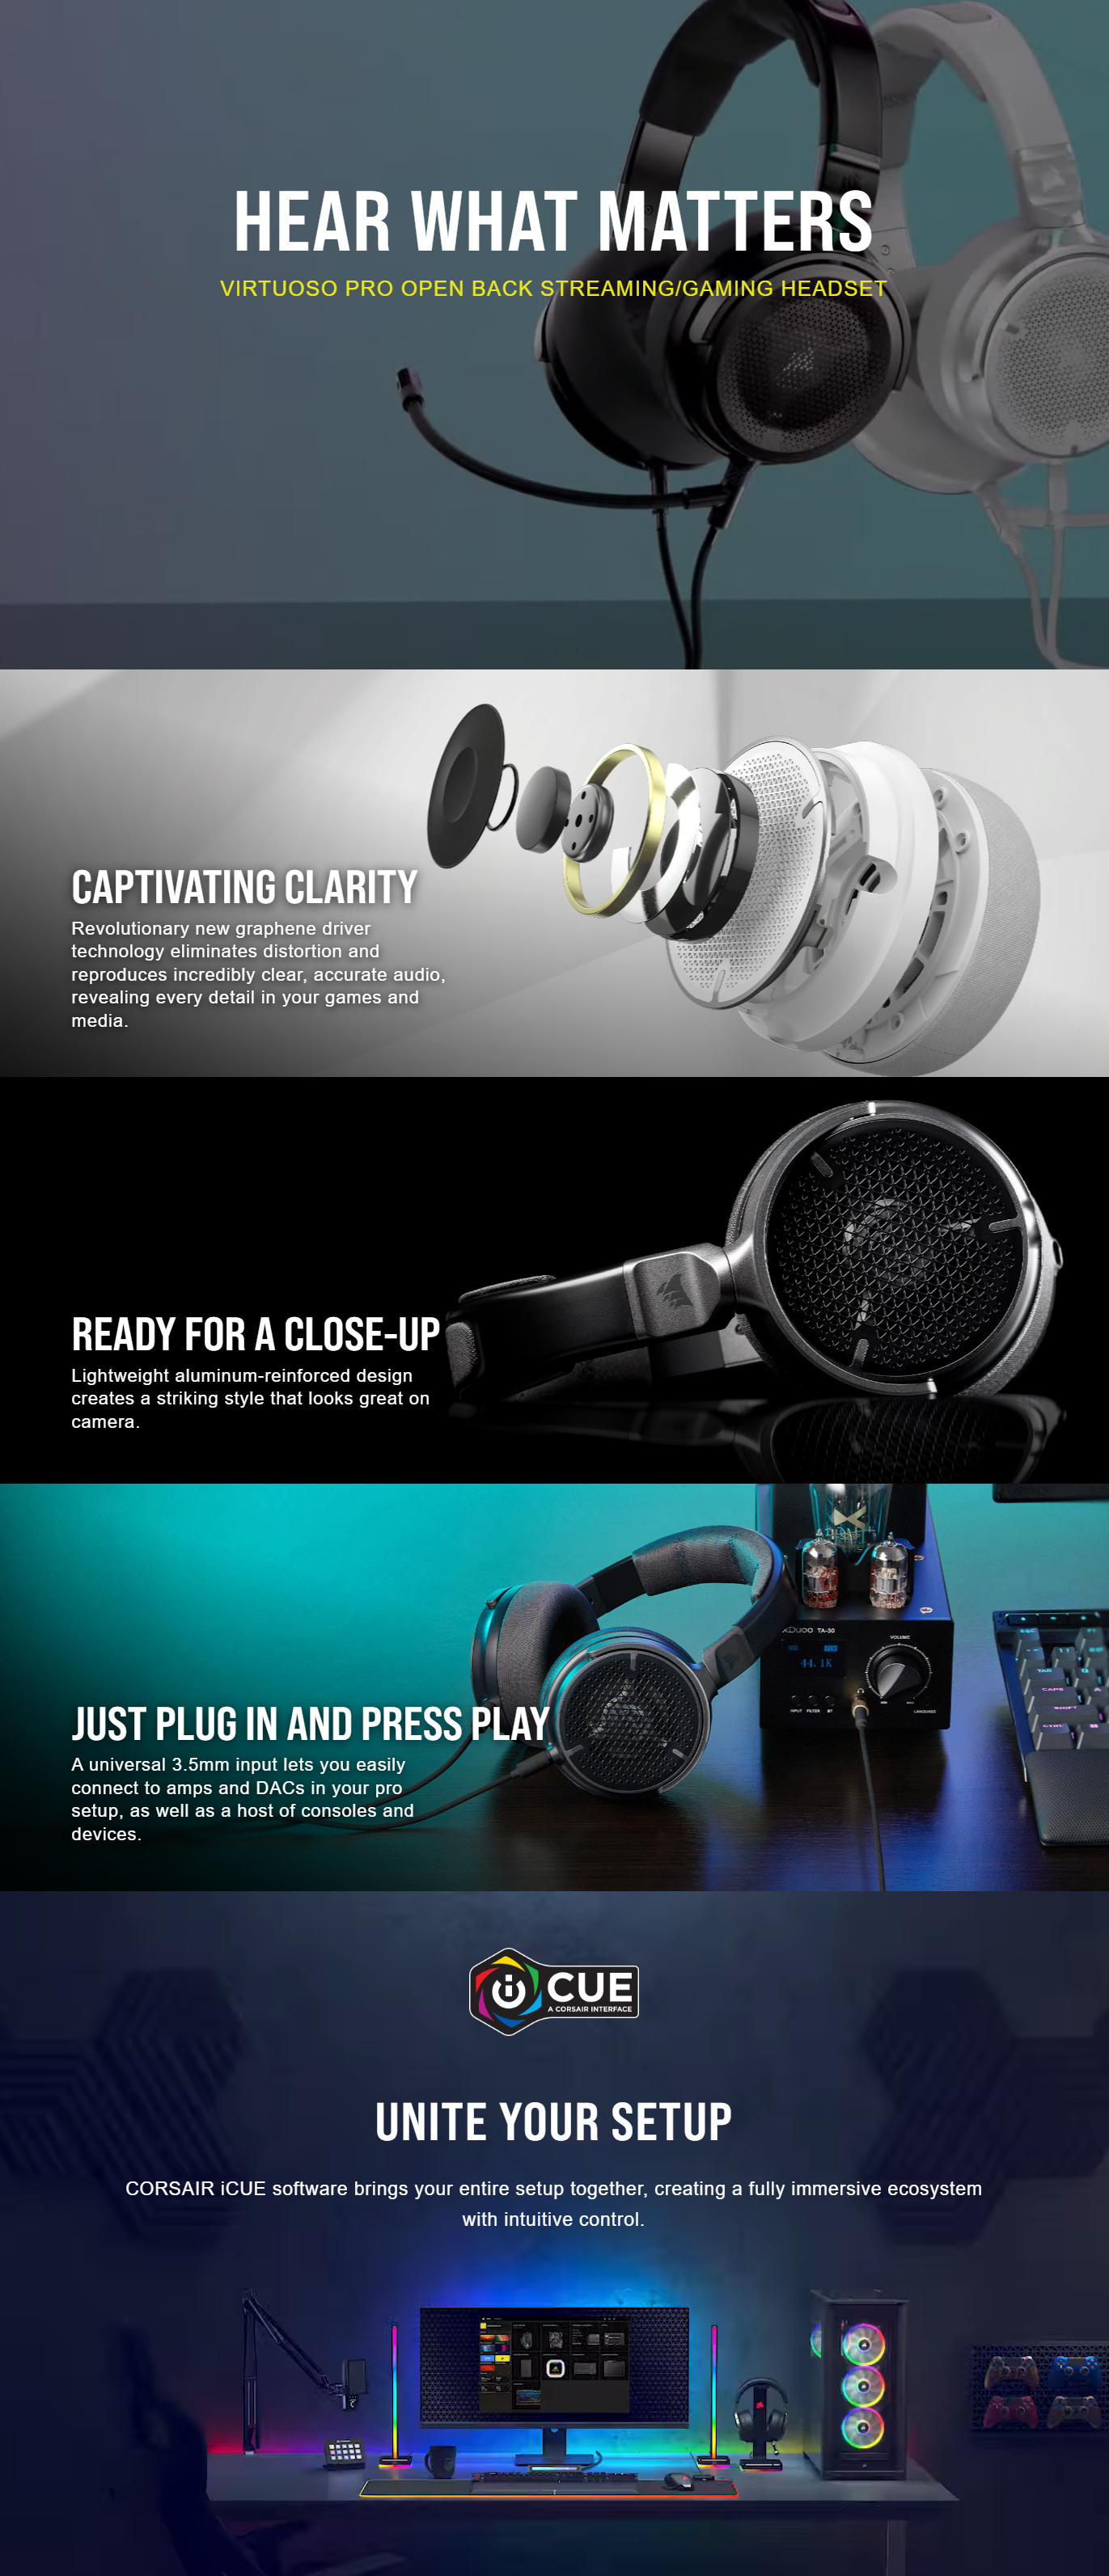 Headphones-Corsair-Virtuoso-Pro-Carbon-7-1-Audio-High-Fidelity-Headphone-1